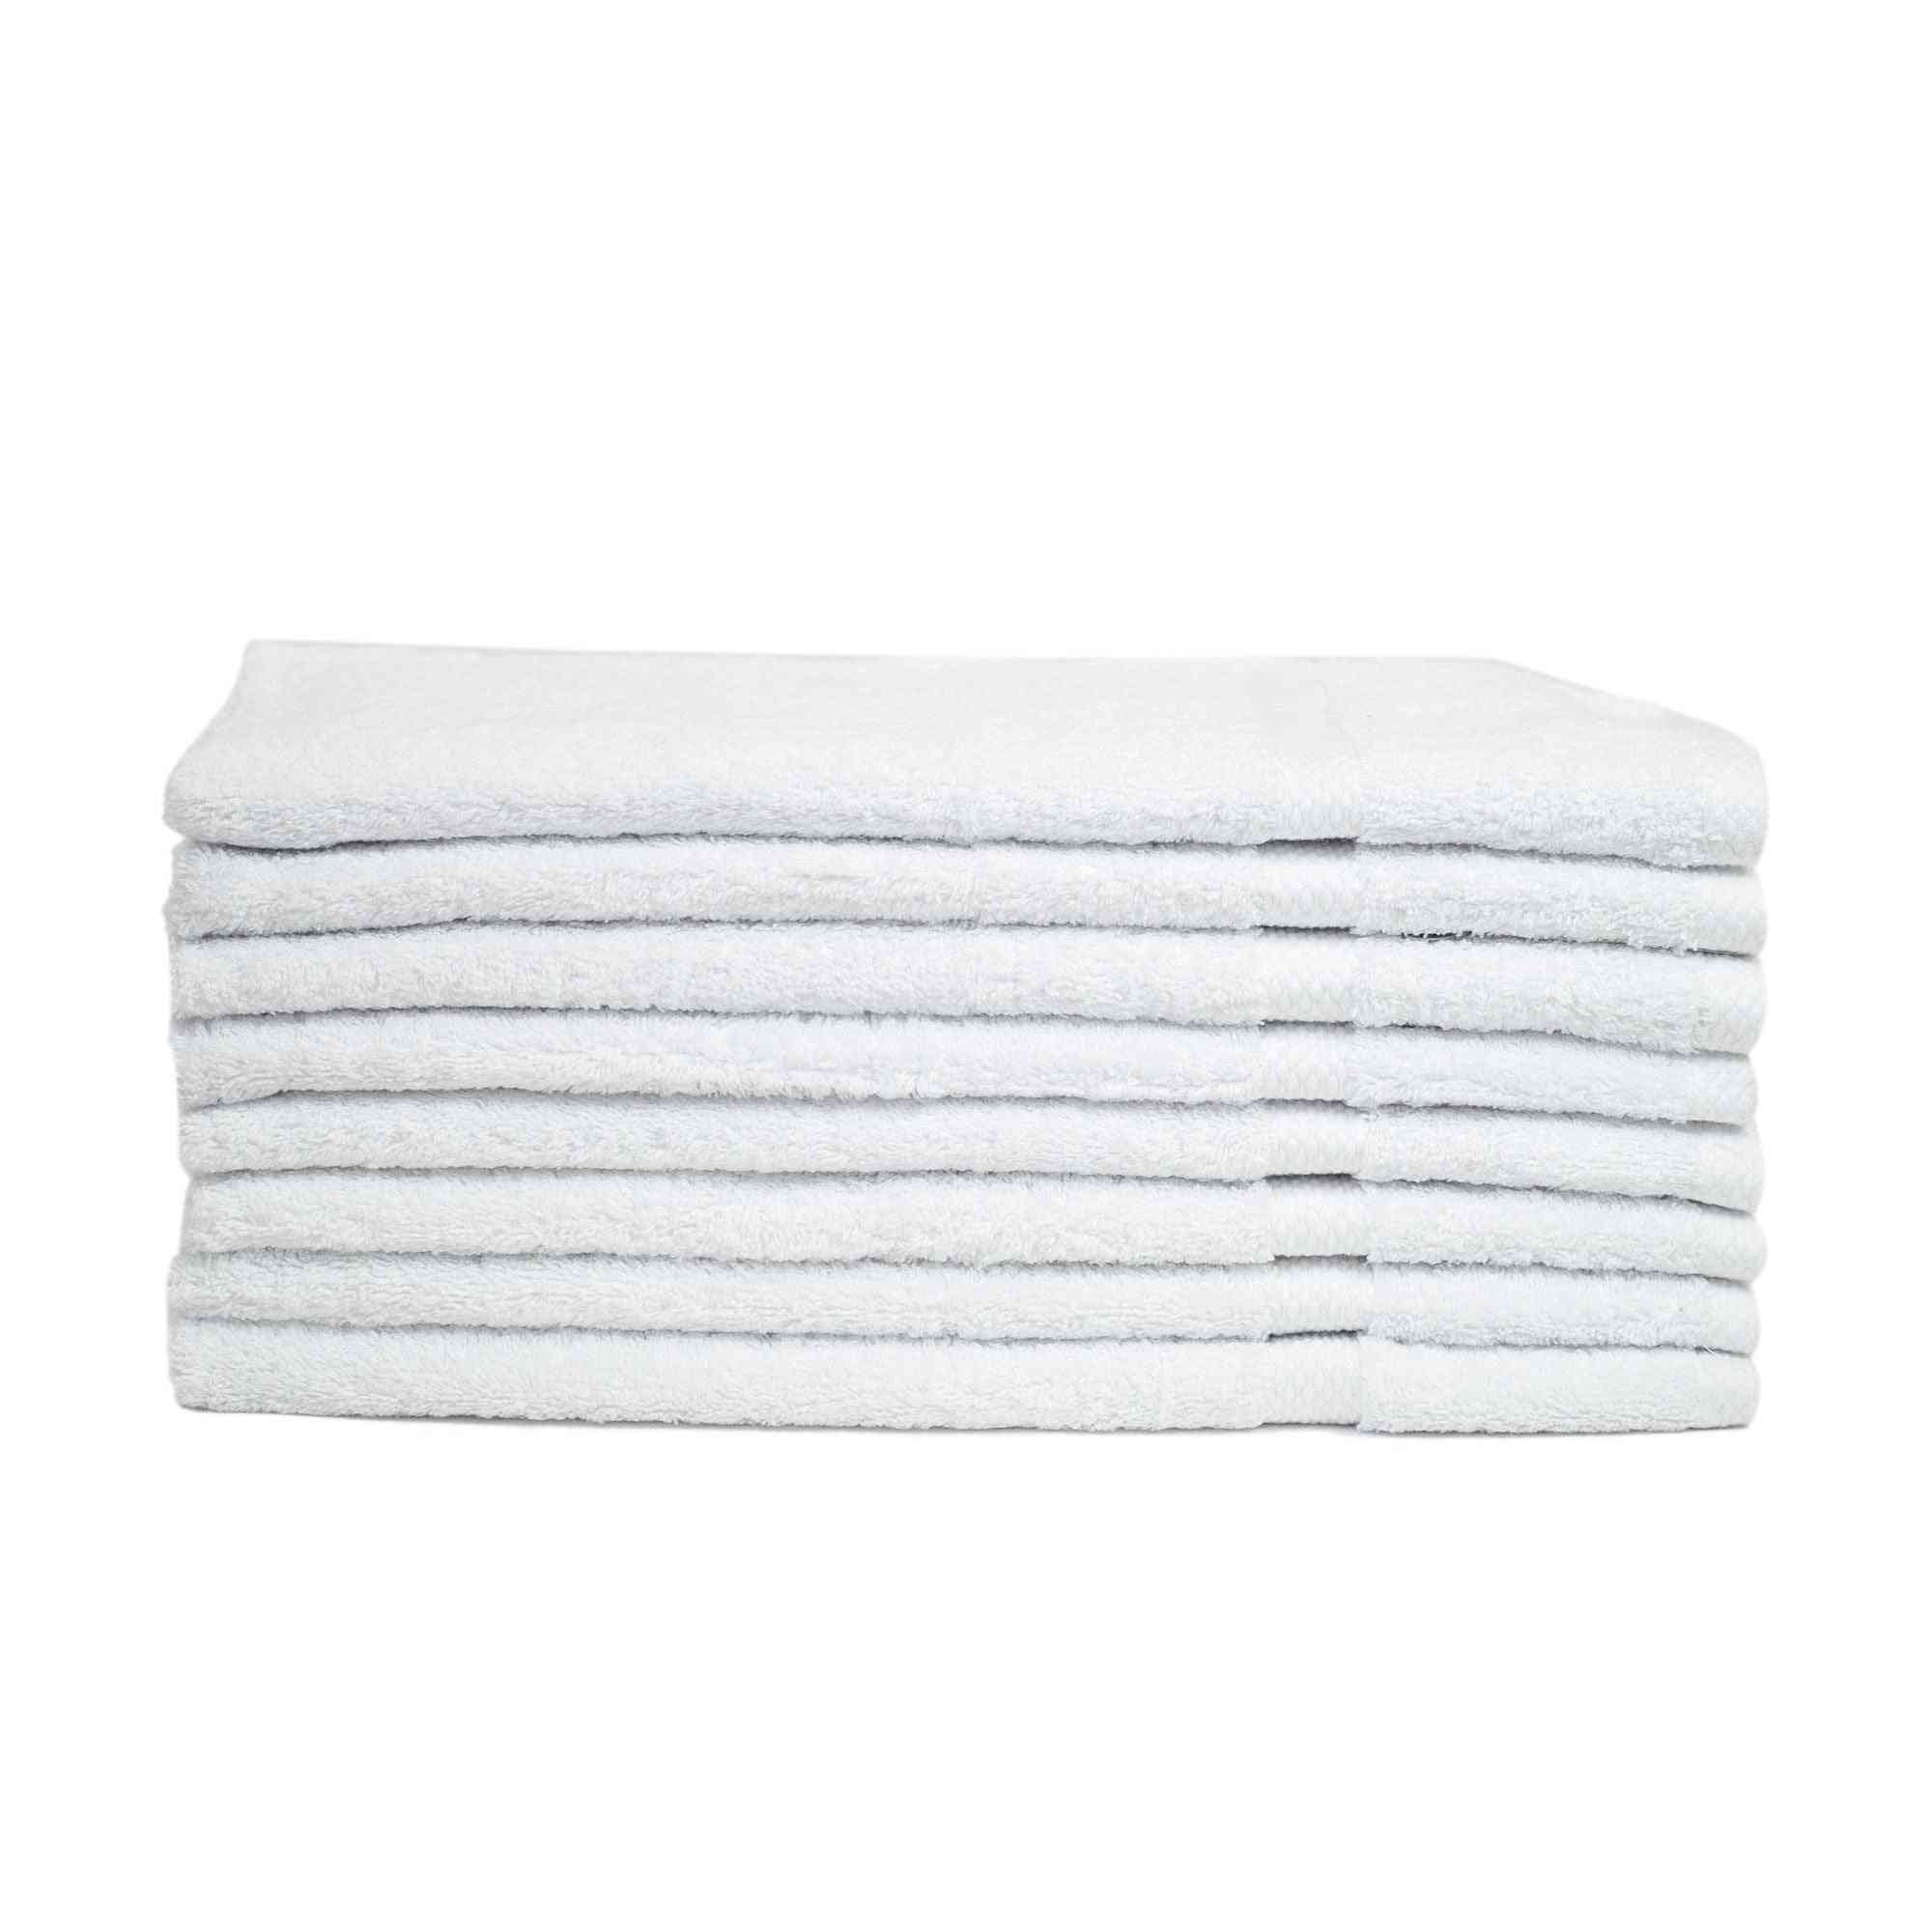 Pacote de toalhas de mão 100% algodão